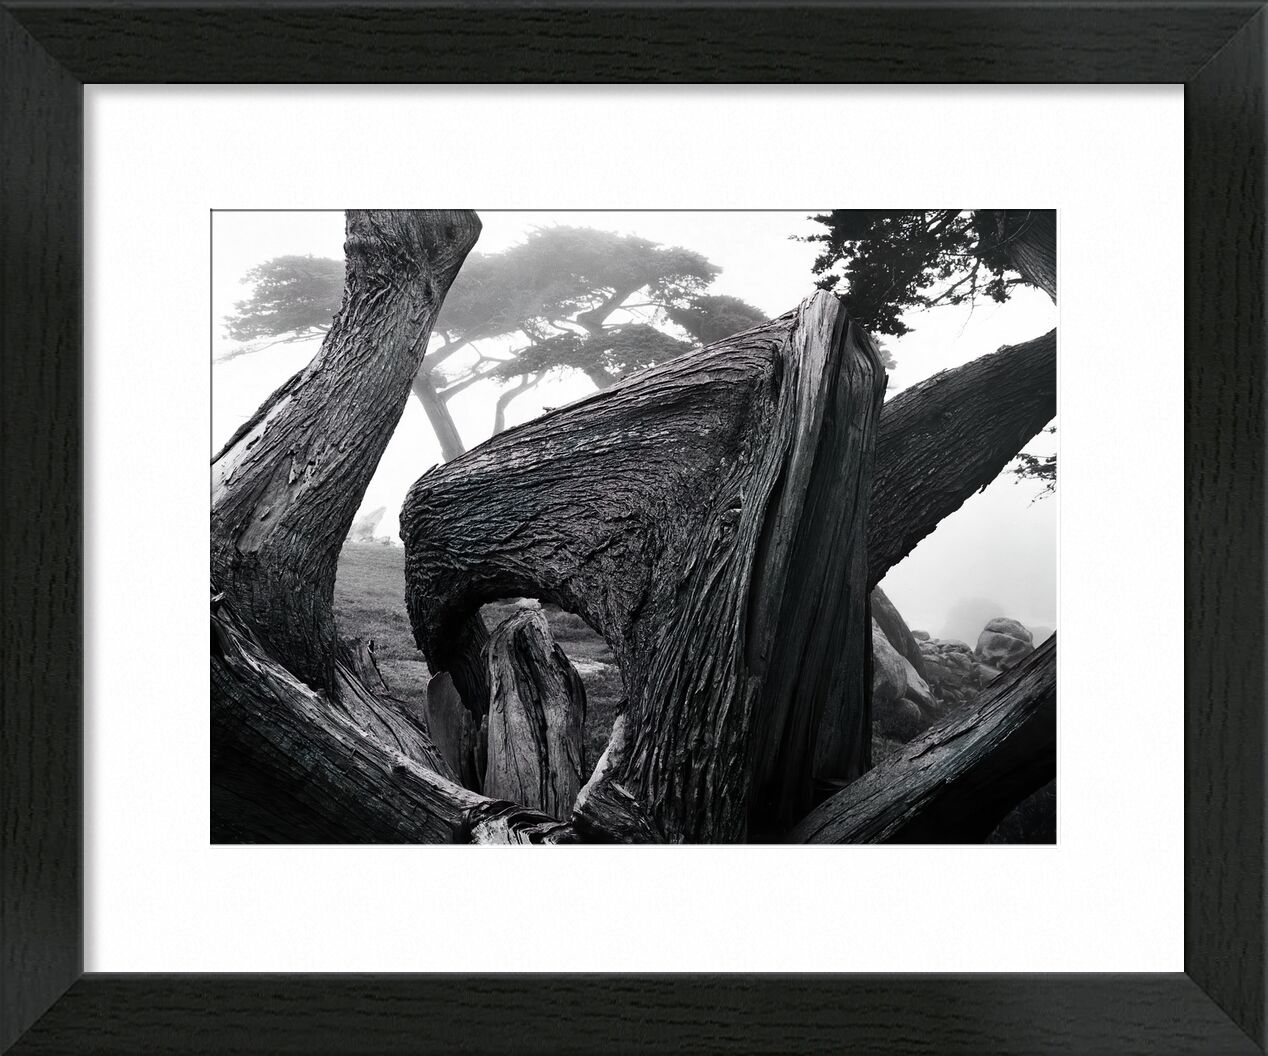 Zypressenbaum im Nebel, Pebble Beach Kalifornien - Ansel Adams von Bildende Kunst, Prodi Art, adams, ANSEL ADAMS, Natur, Nebel, Wald, Baum